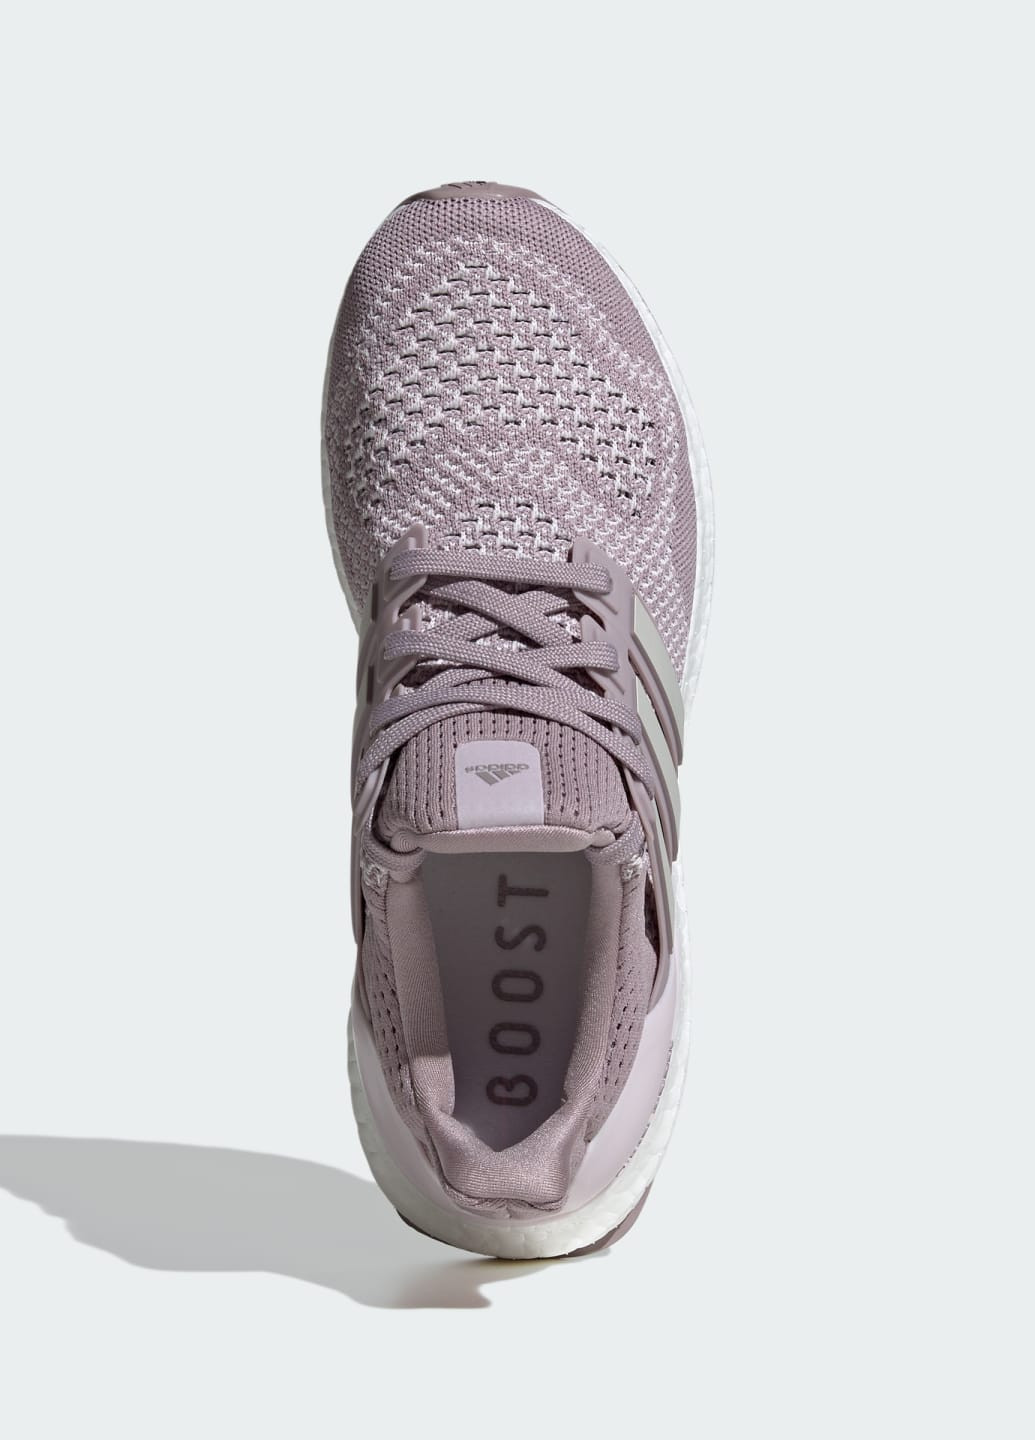 Фиолетовые всесезонные кроссовки ultraboost 1.0 adidas